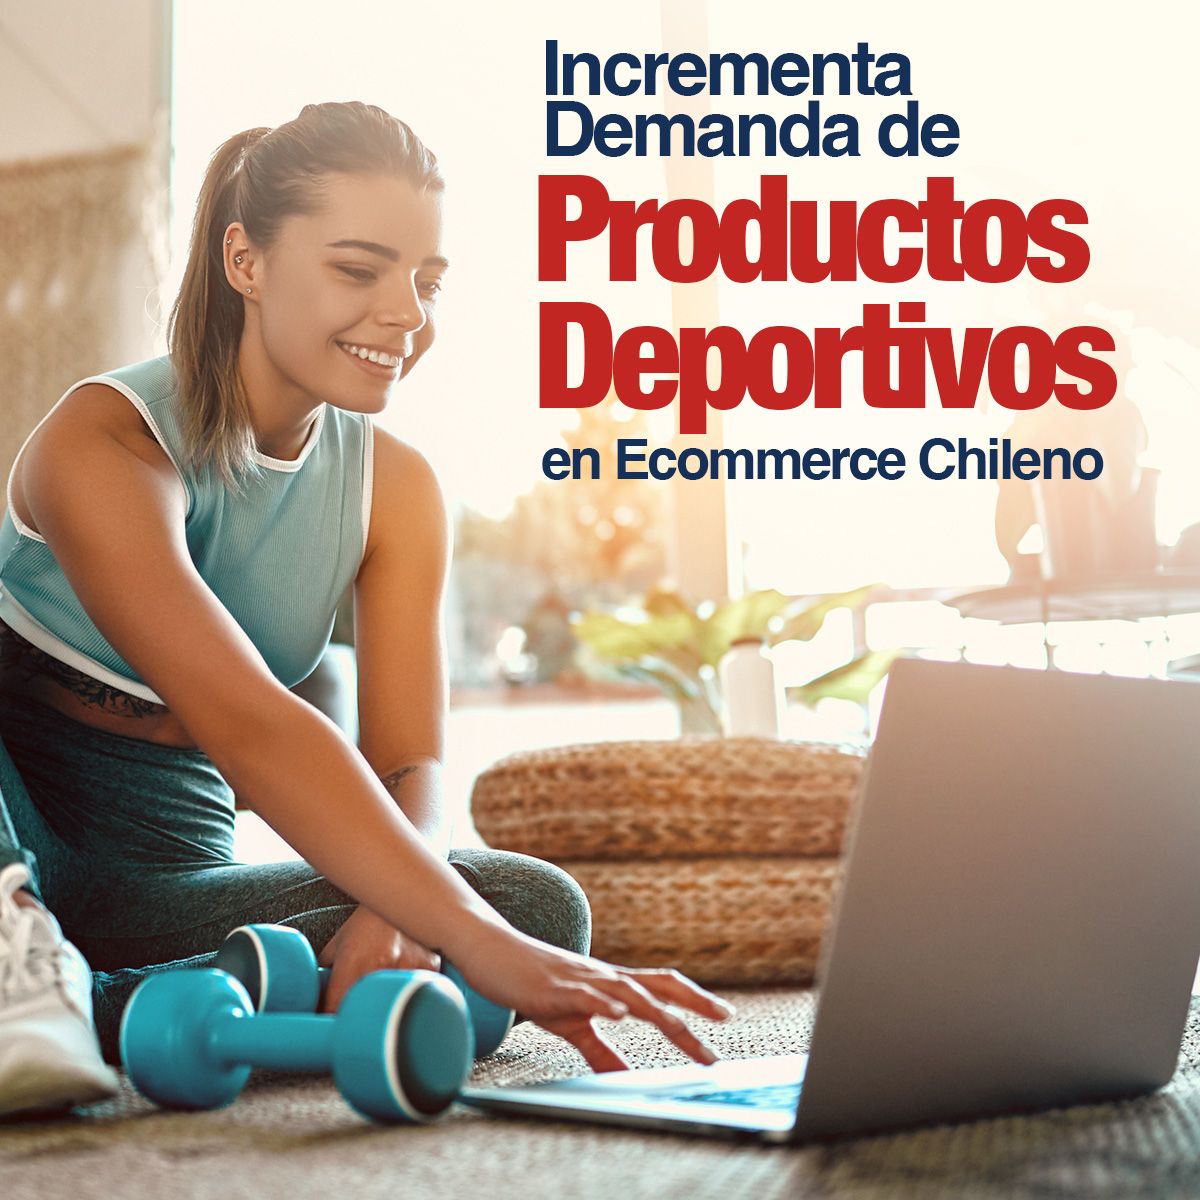 Incrementa Demanda de Productos Deportivos en Ecommerce Chileno